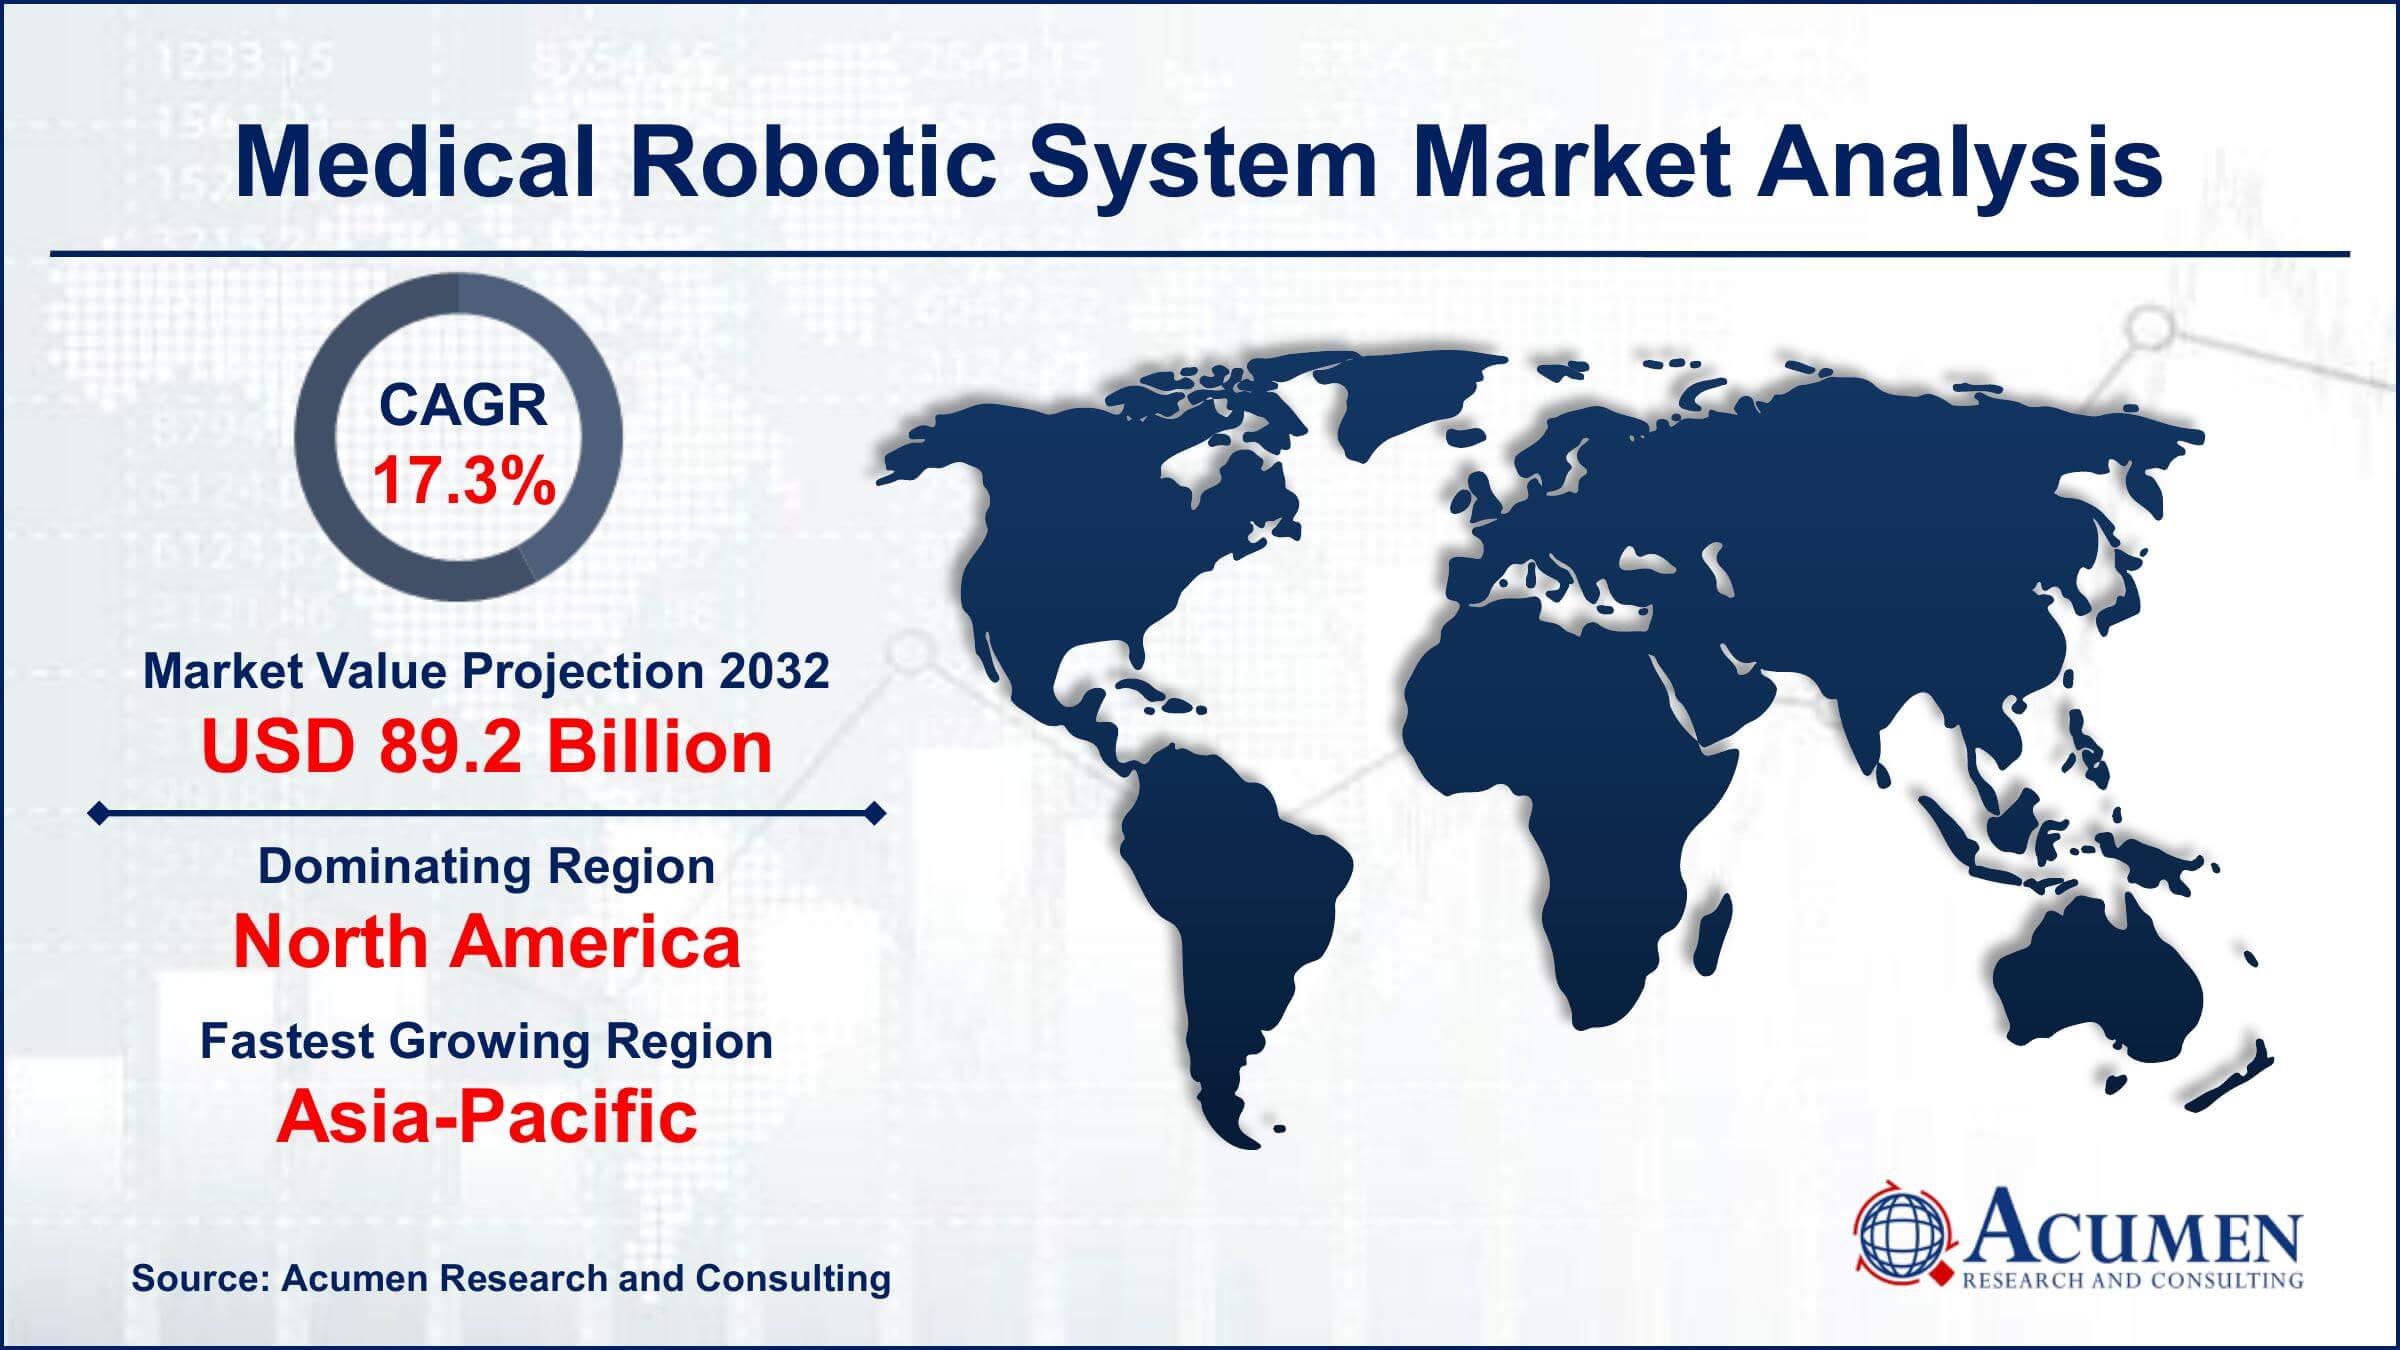 Global Medical Robotic System Market Trends